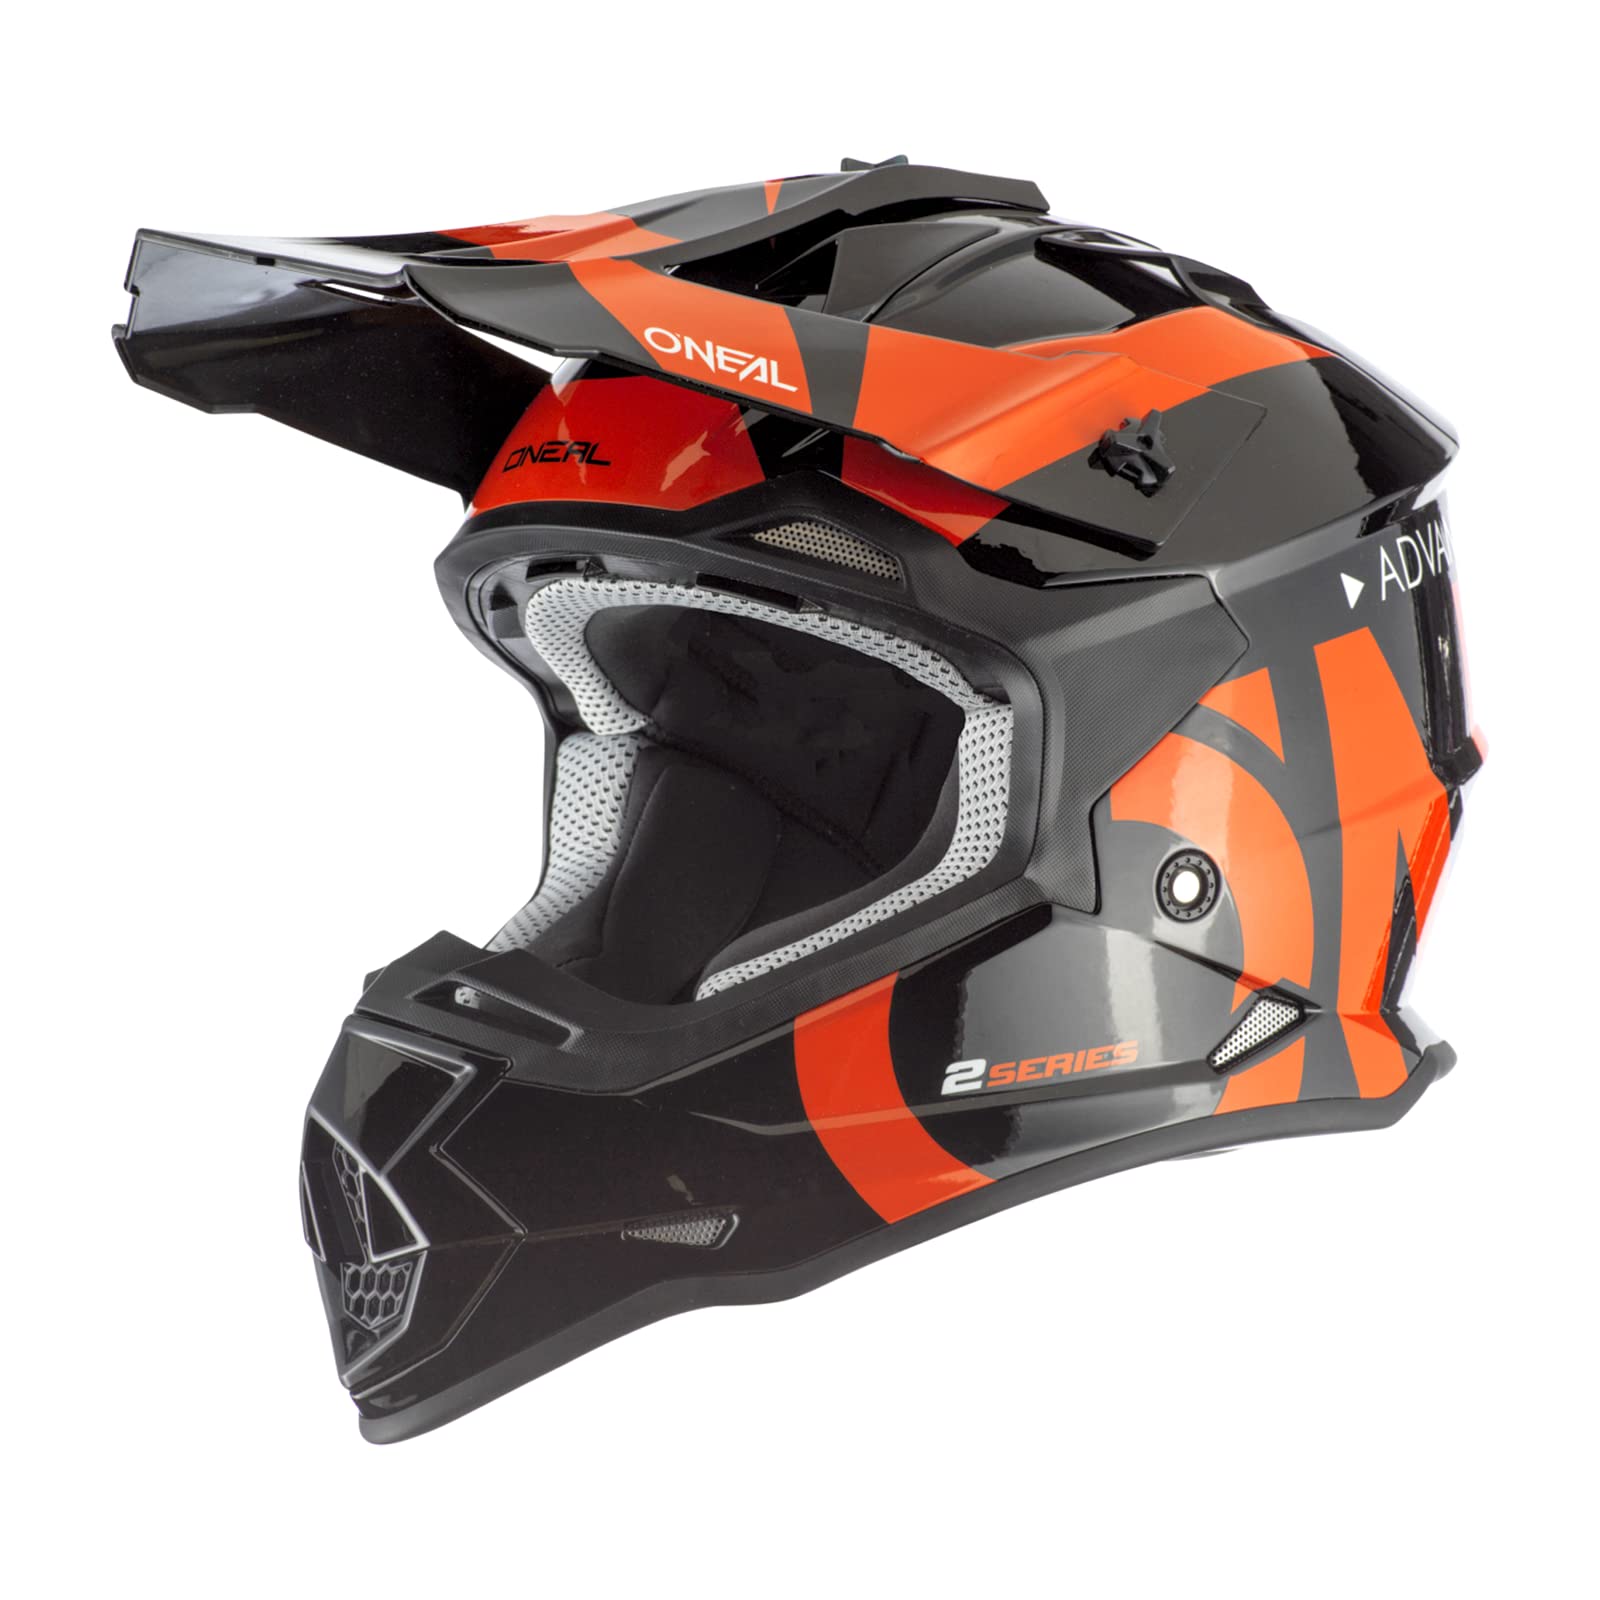 O'NEAL | Motocross-Helm | MX Enduro | ABS-Schale, Lüftungsöffnungen für optimale Belüftung & Kühlung | 2SRS Helmet Slick | Erwachsene | Schwarz Orange | Größe XL